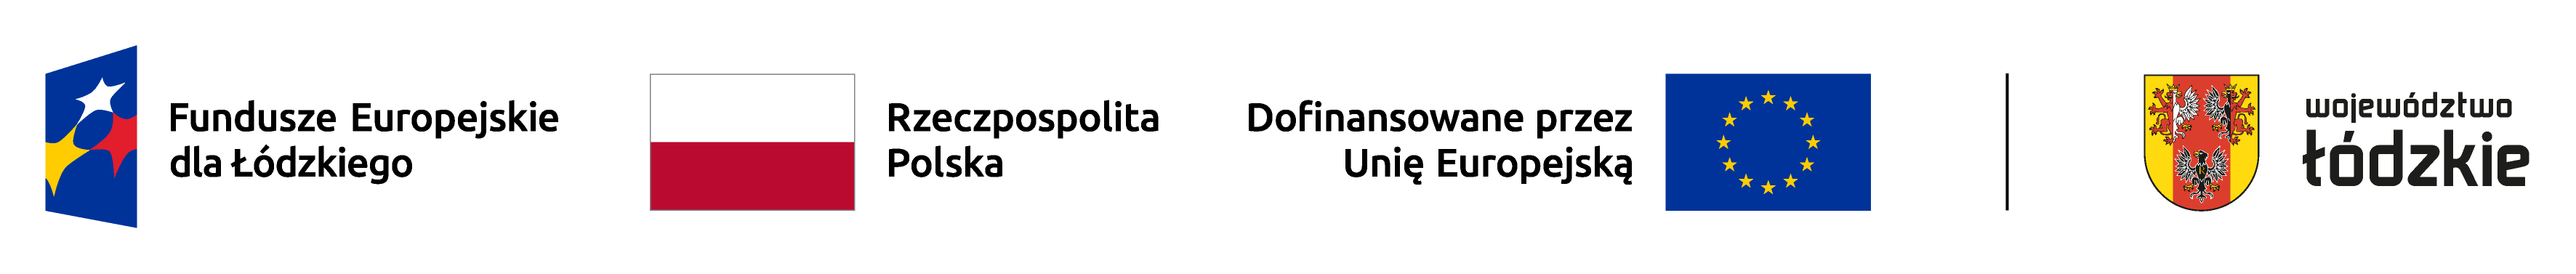 Plik zawiera logotypy Funduszy Europejskich dla Łódzkiego, flagę RP, Unii Europejskiej oraz Województwa Łódzkiego ustawionych poziomo w kolorystyce RGB.